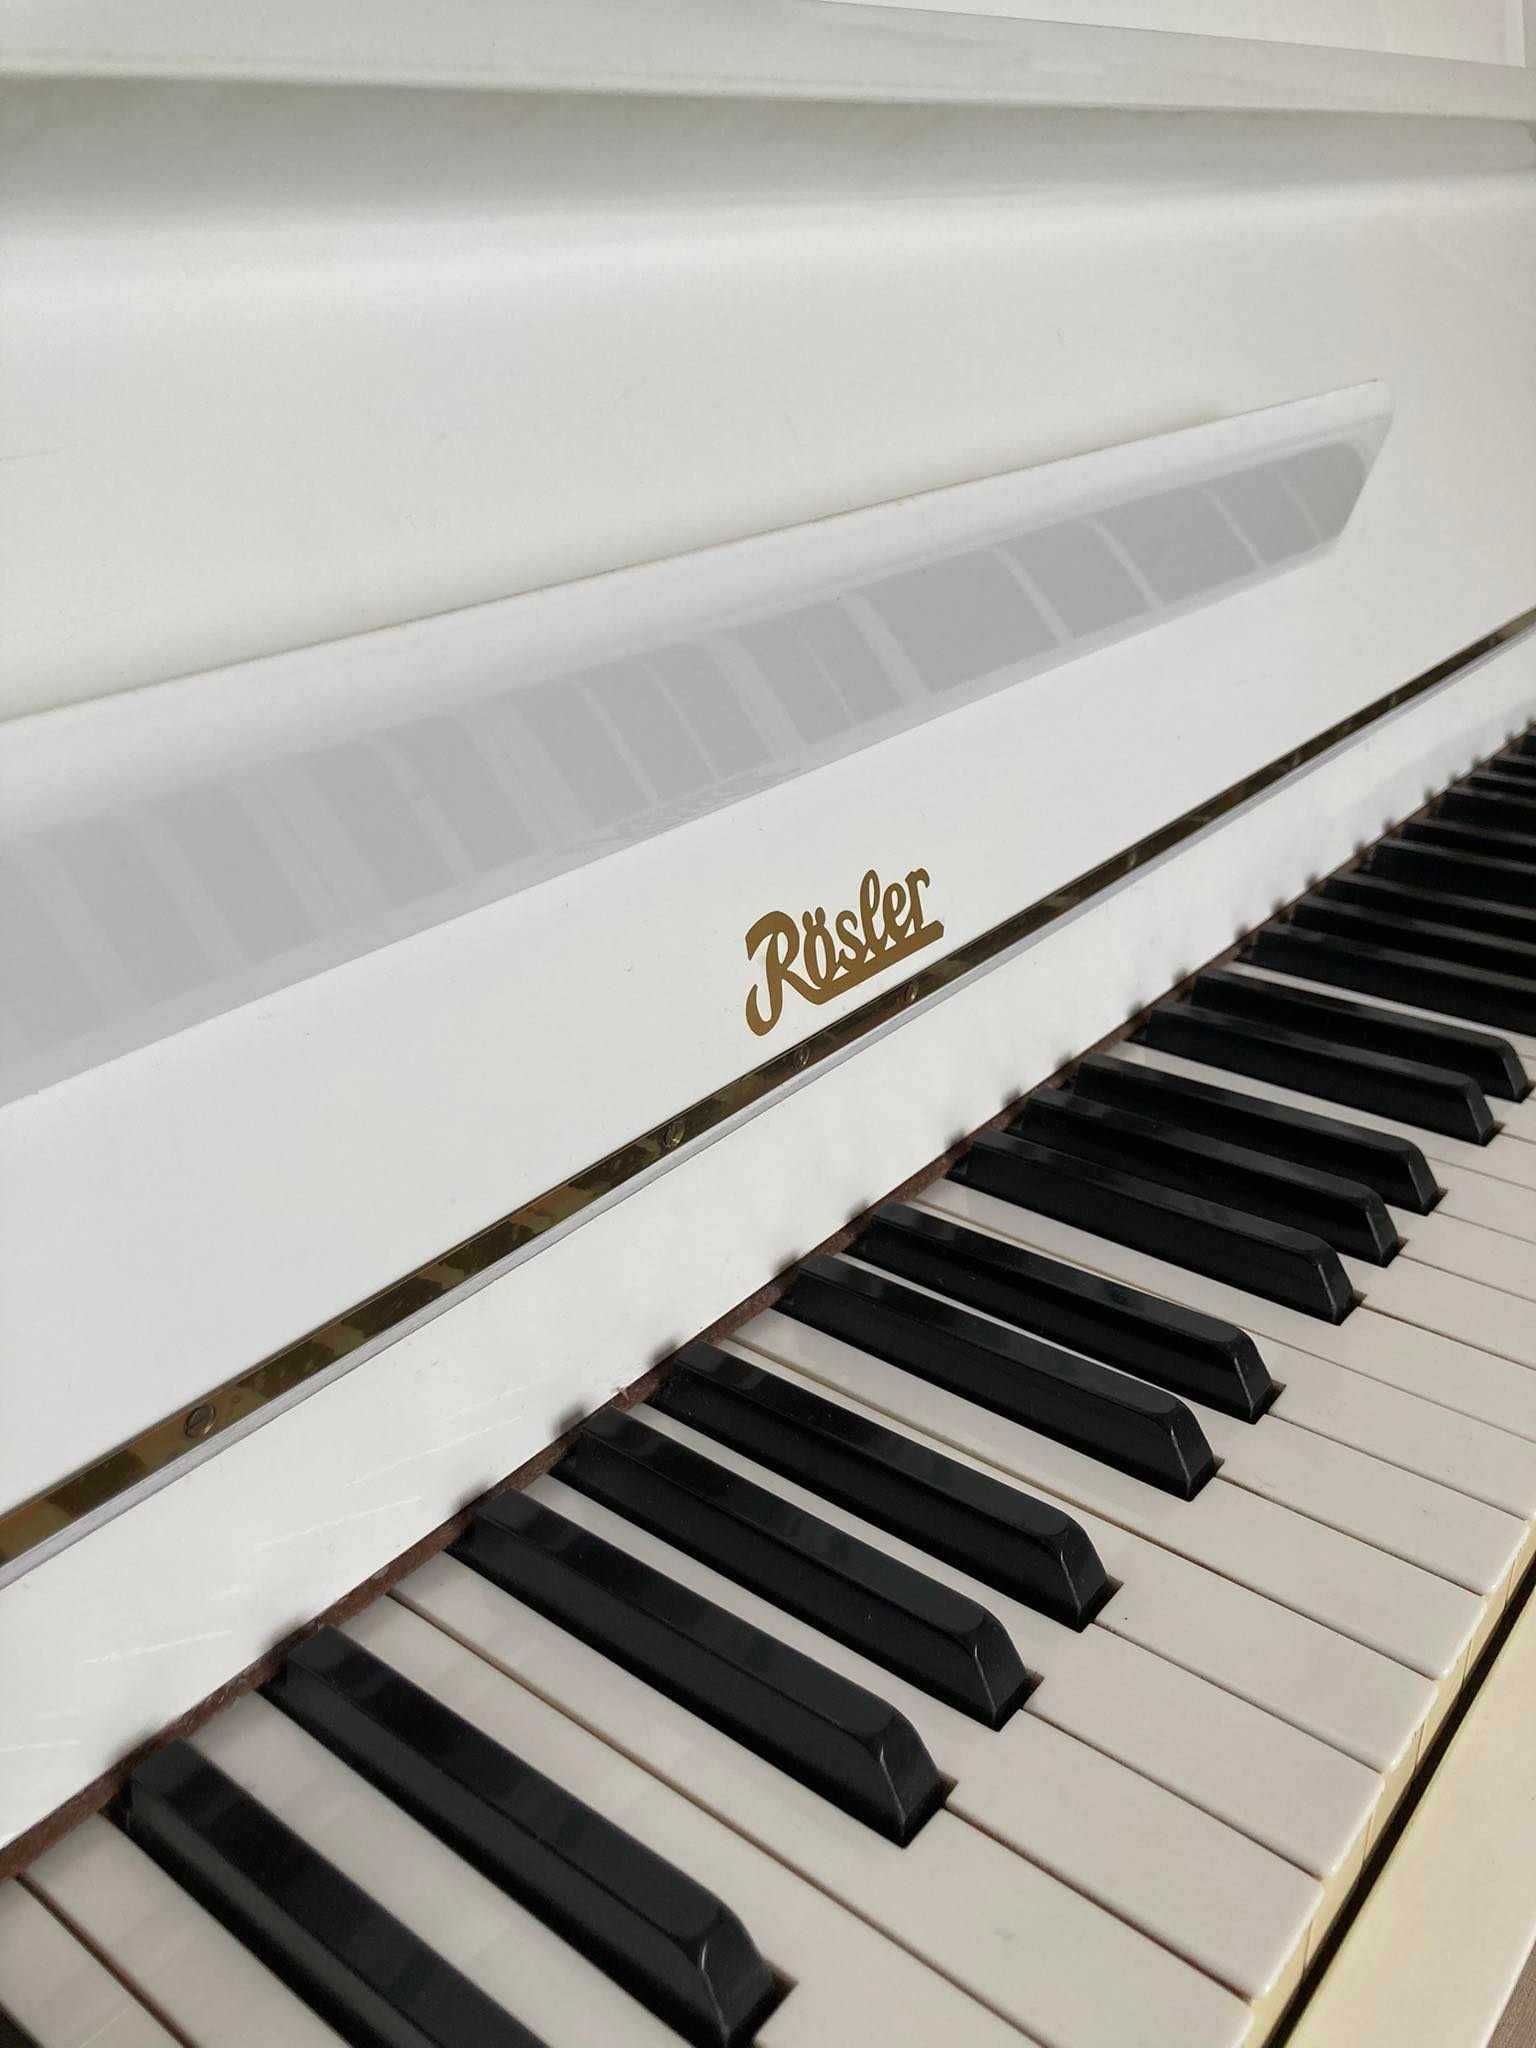 Sprzedam białe pianino marki Rosler